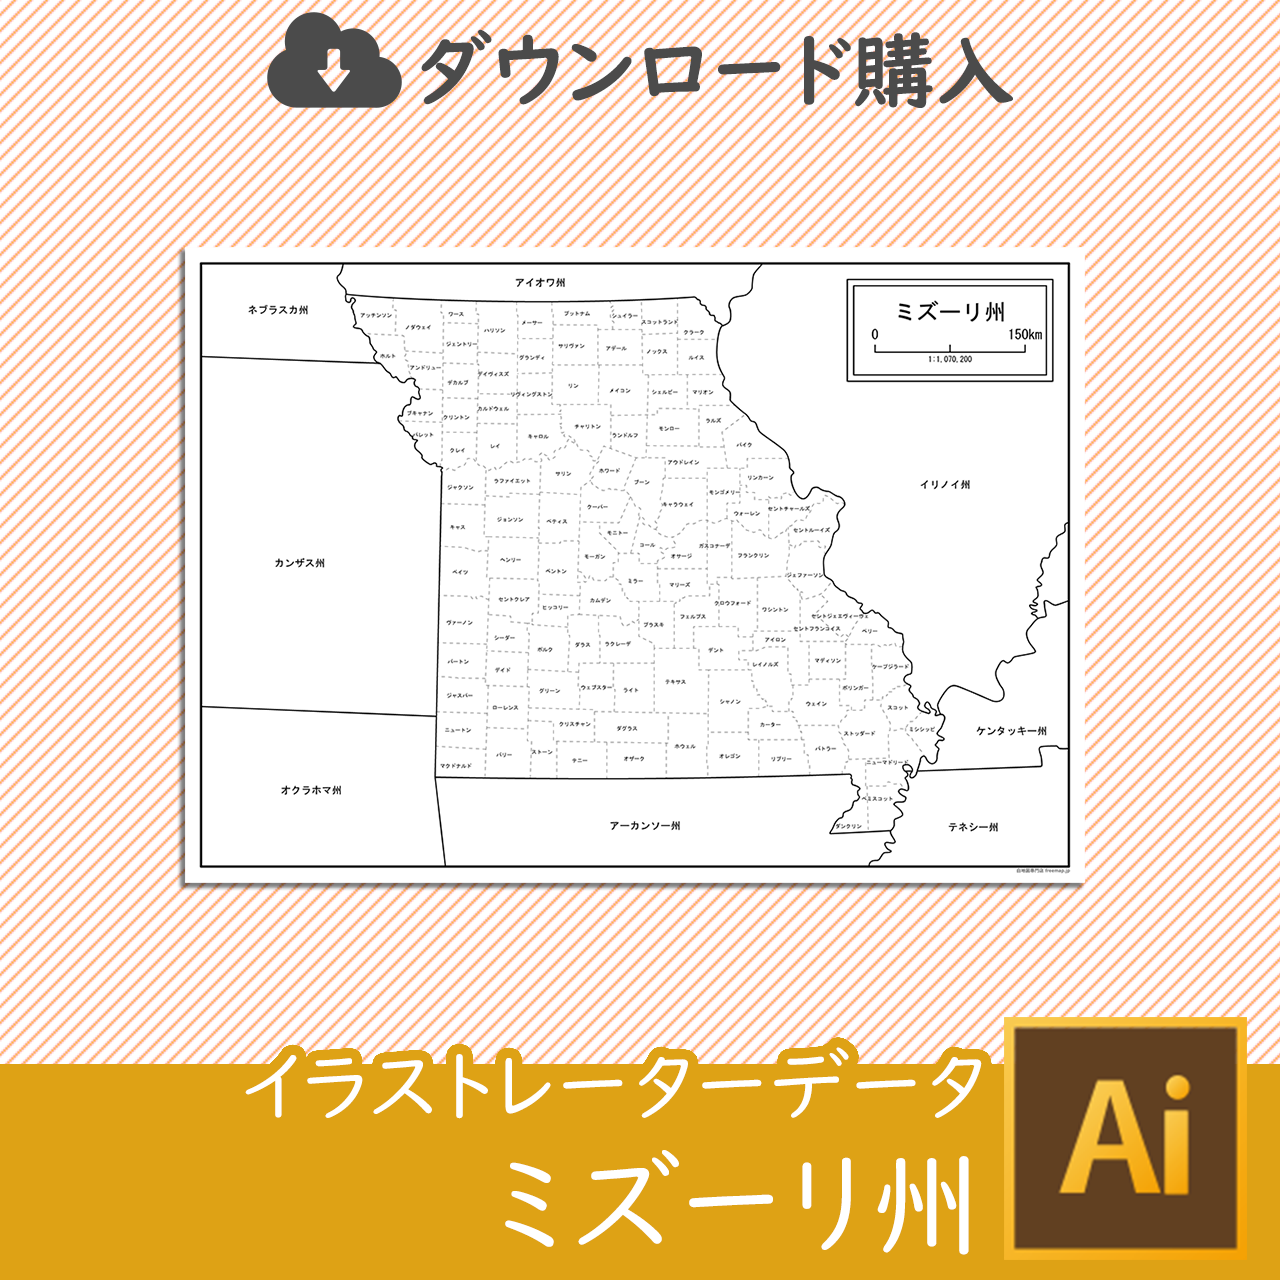 ミズーリ州の白地図データのサムネイル画像